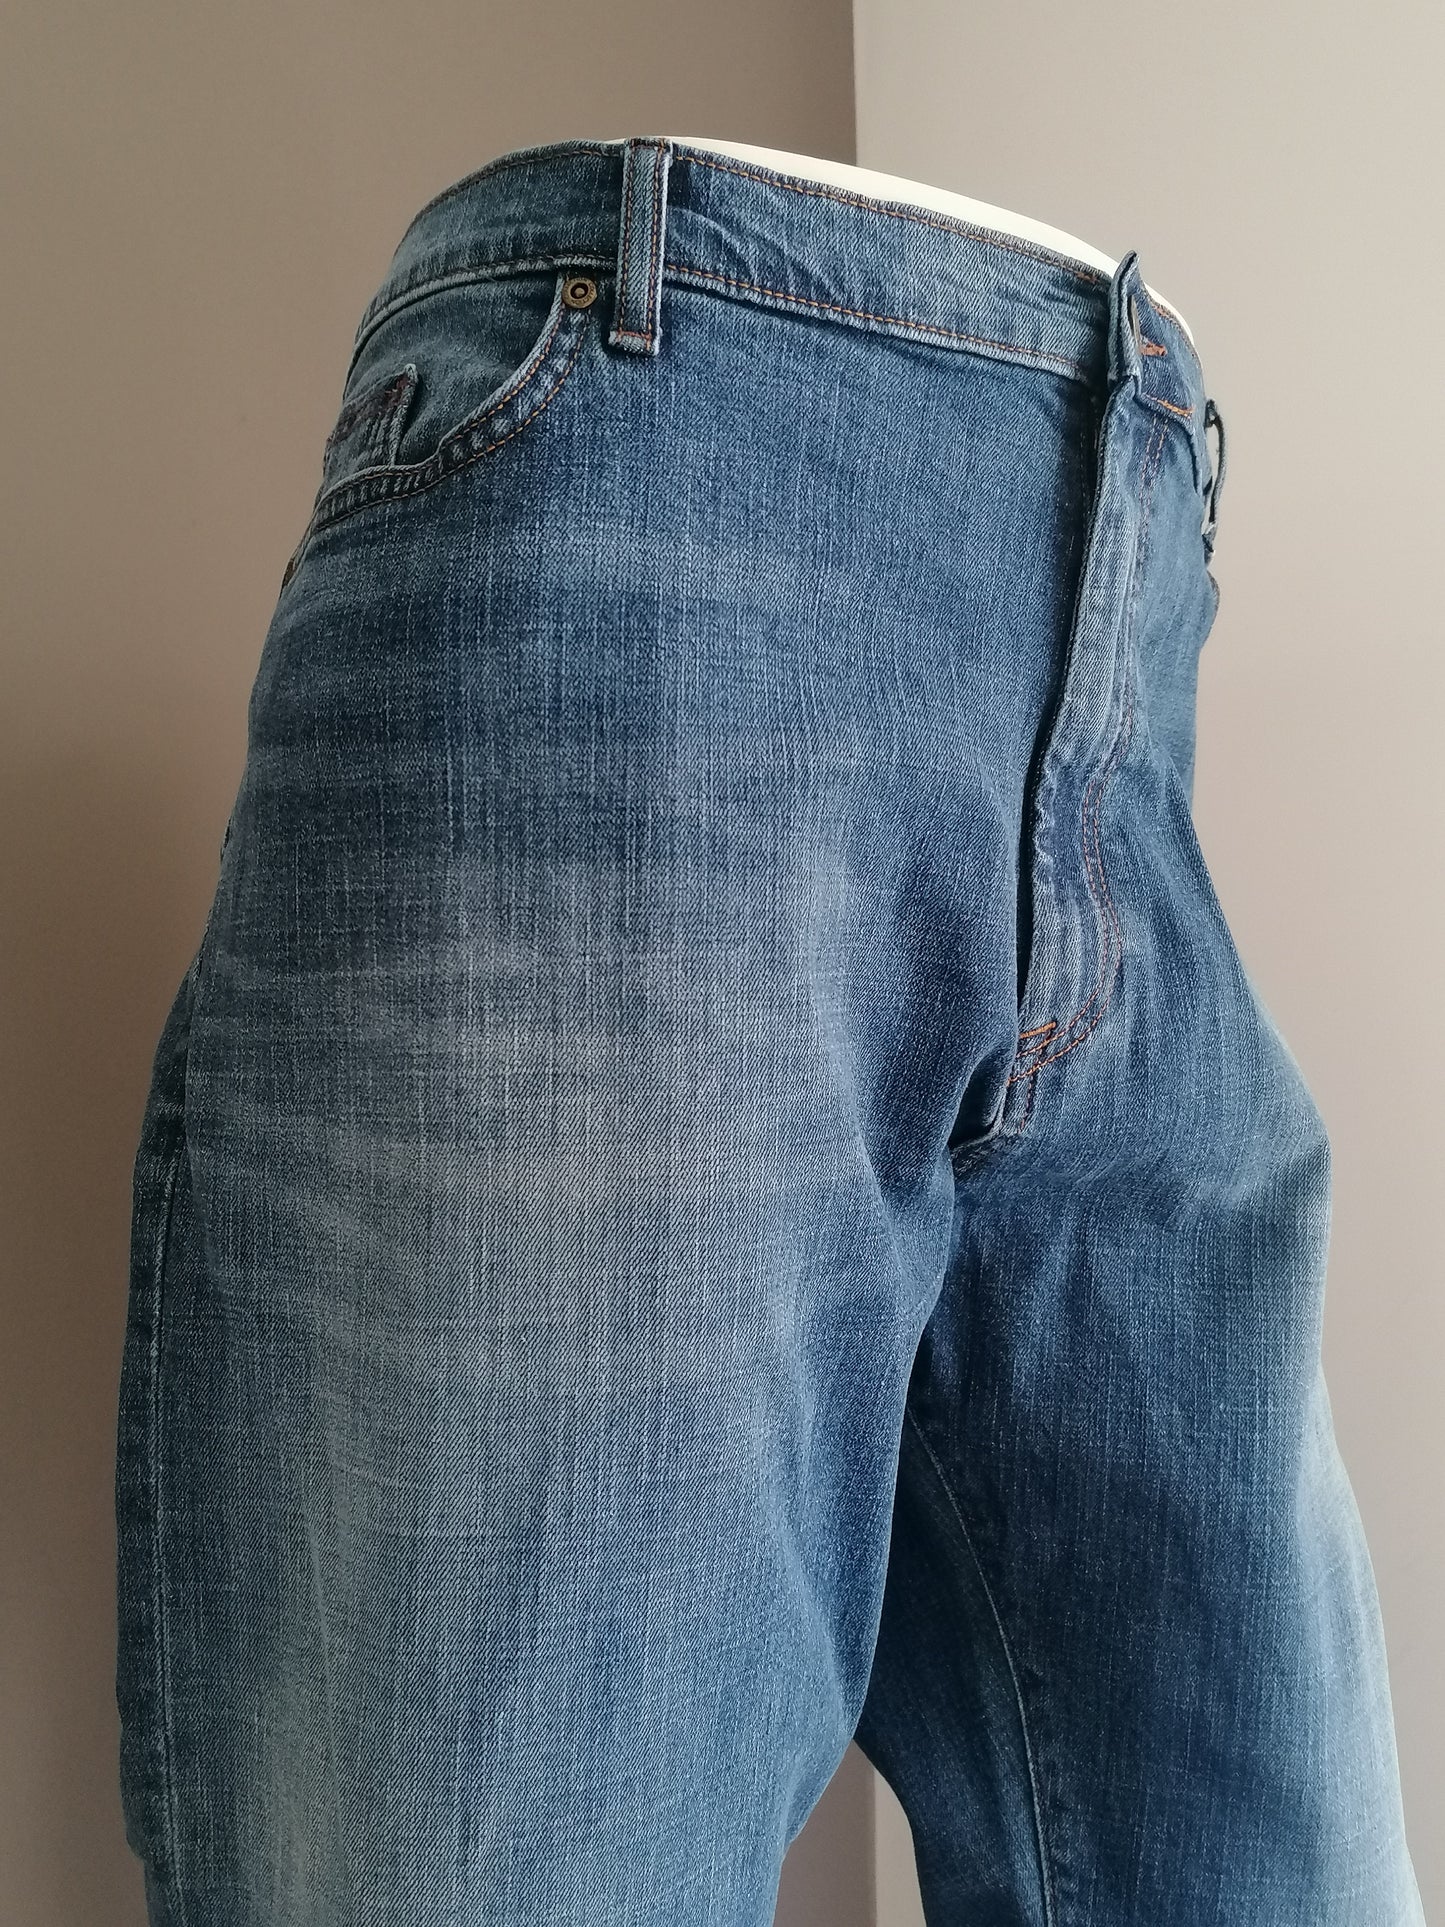 Jeans M&S (Marks & Spencer). Colorato blu. Conico. Taglia W44 - L30. Stirata.